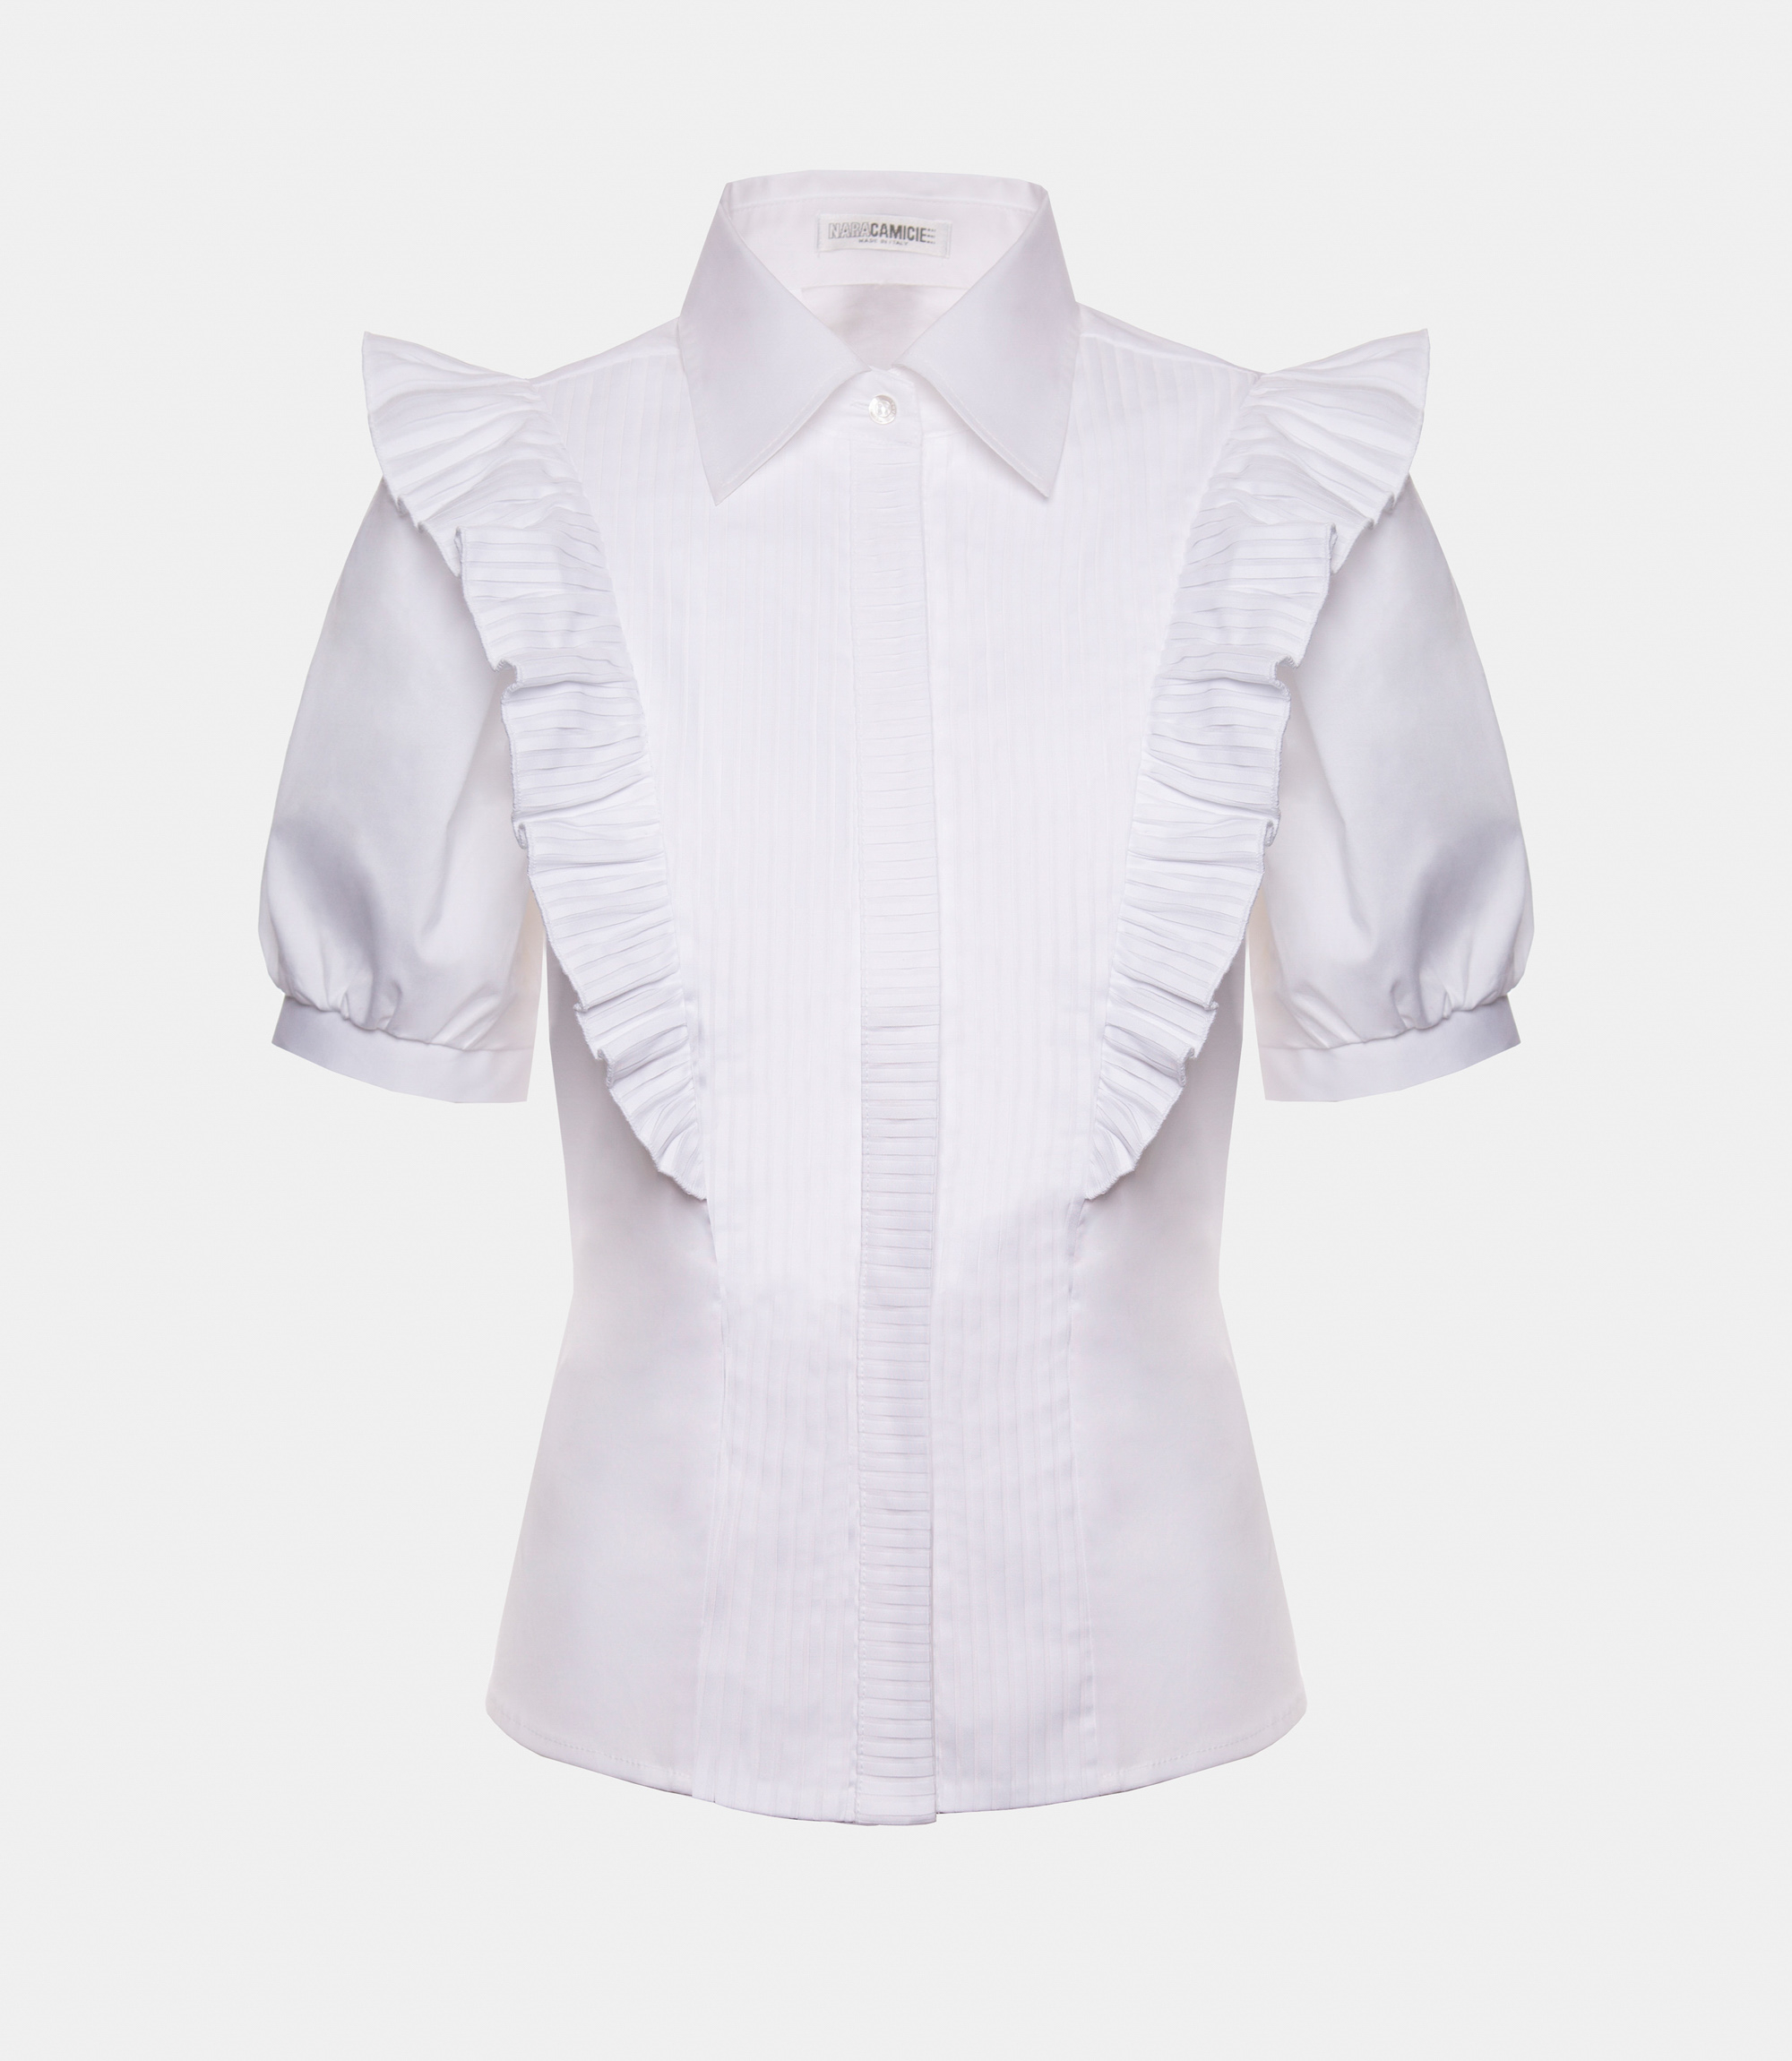 Shirt with micro pleats - SHIRT - Nara Milano